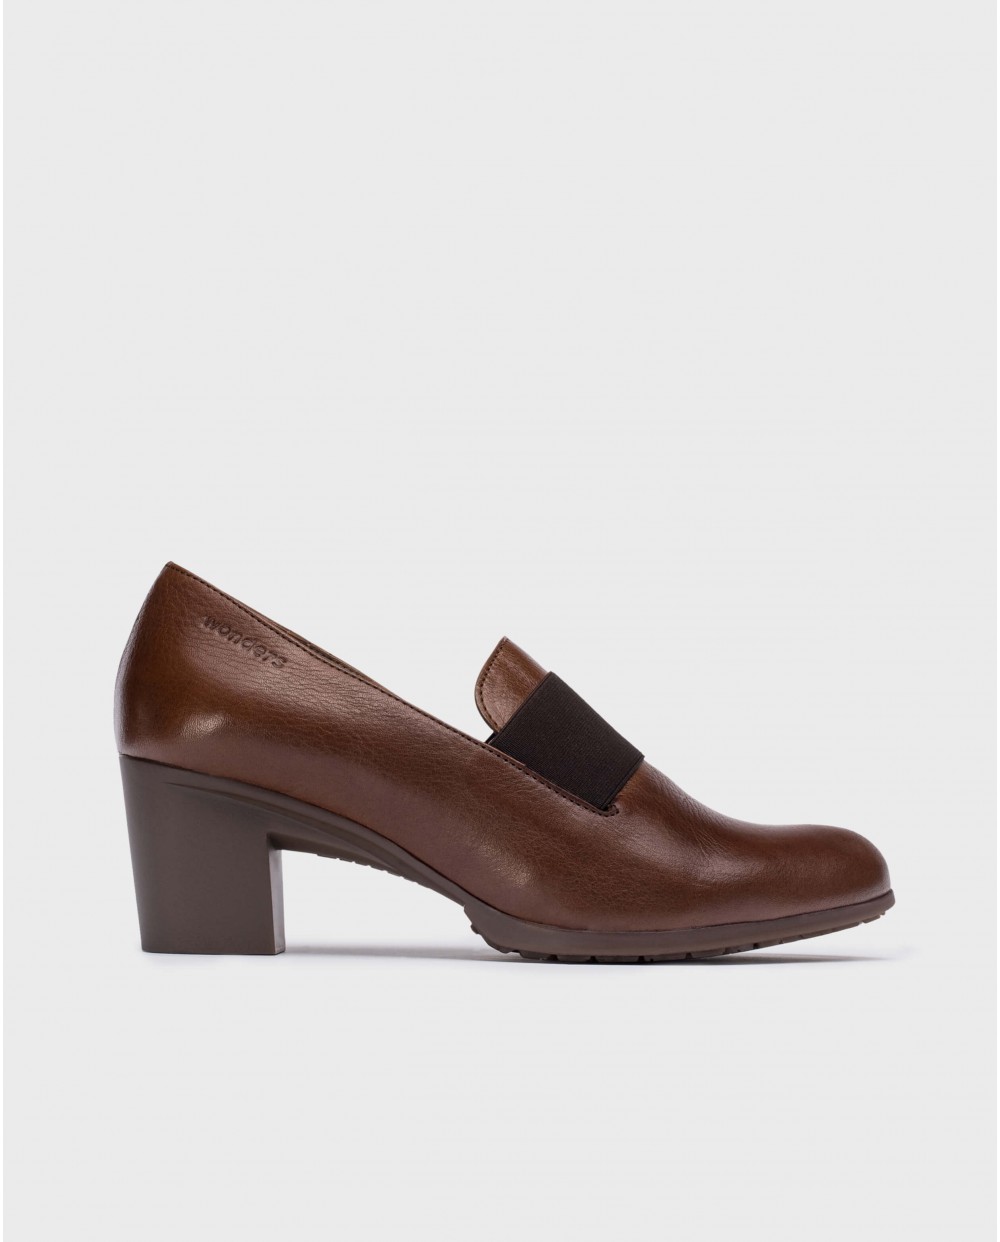 Wonders-Heels-Brown elastic shoes